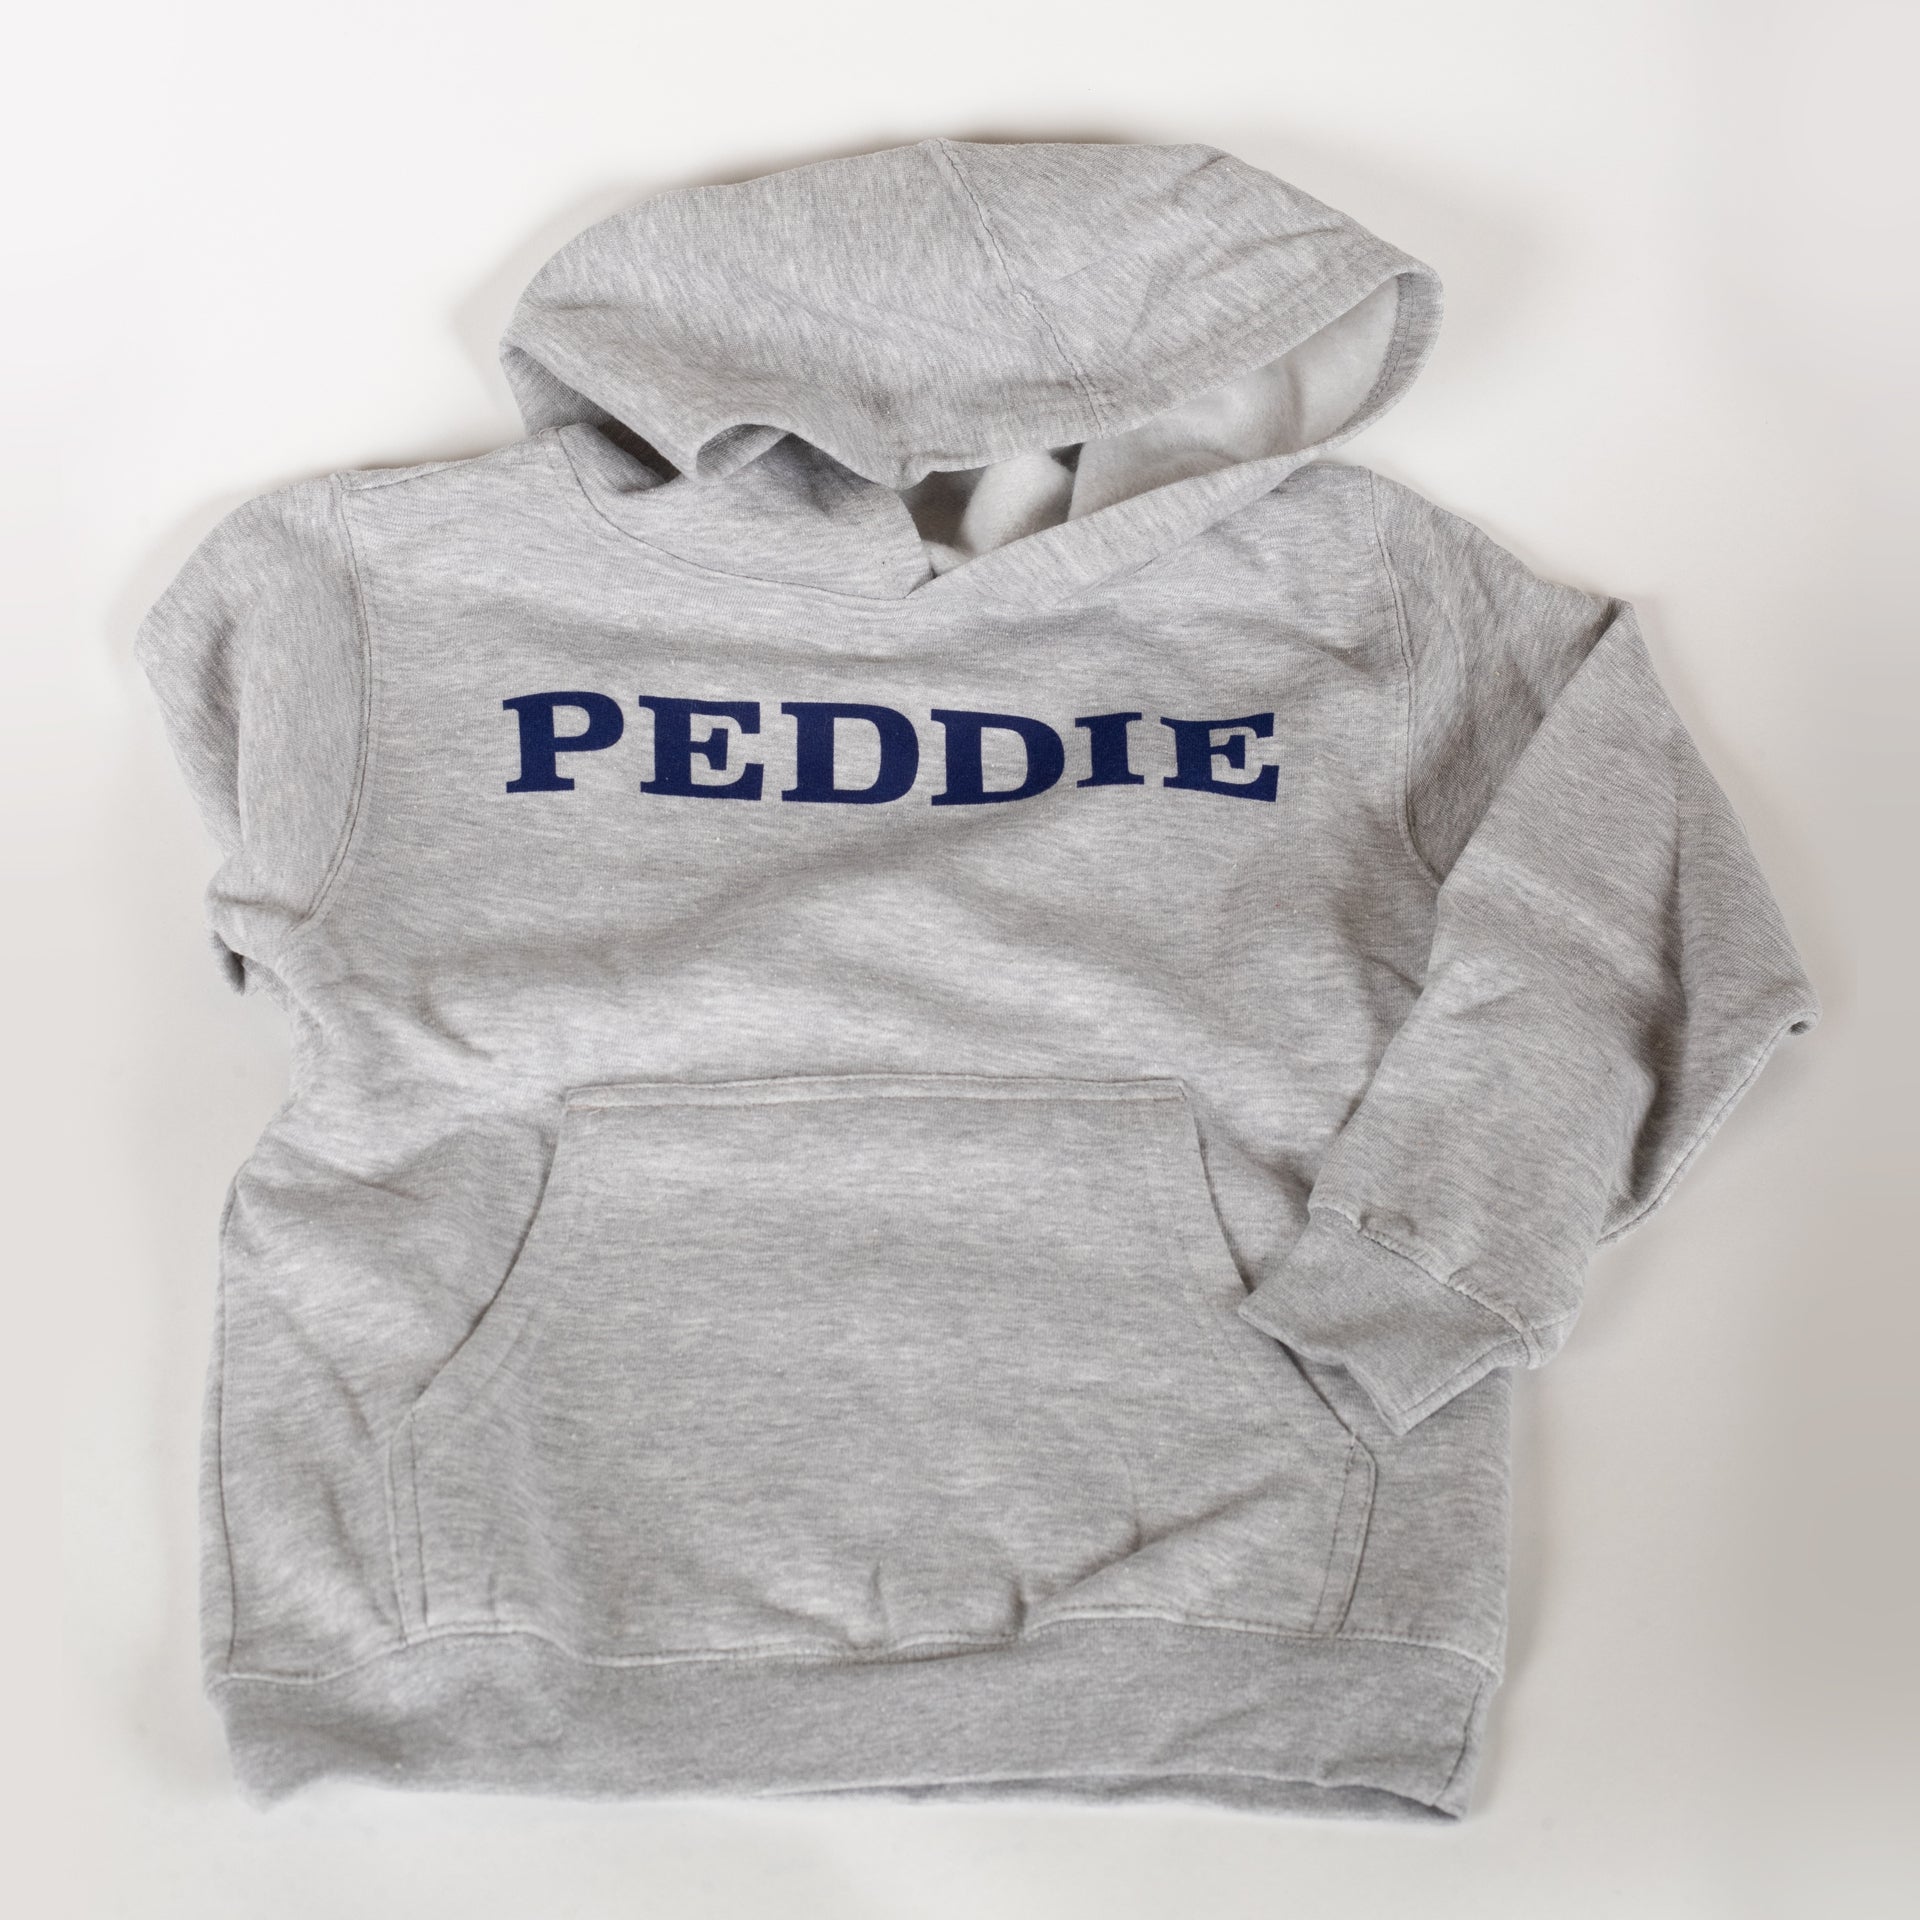 Peddie Youth Hoodie